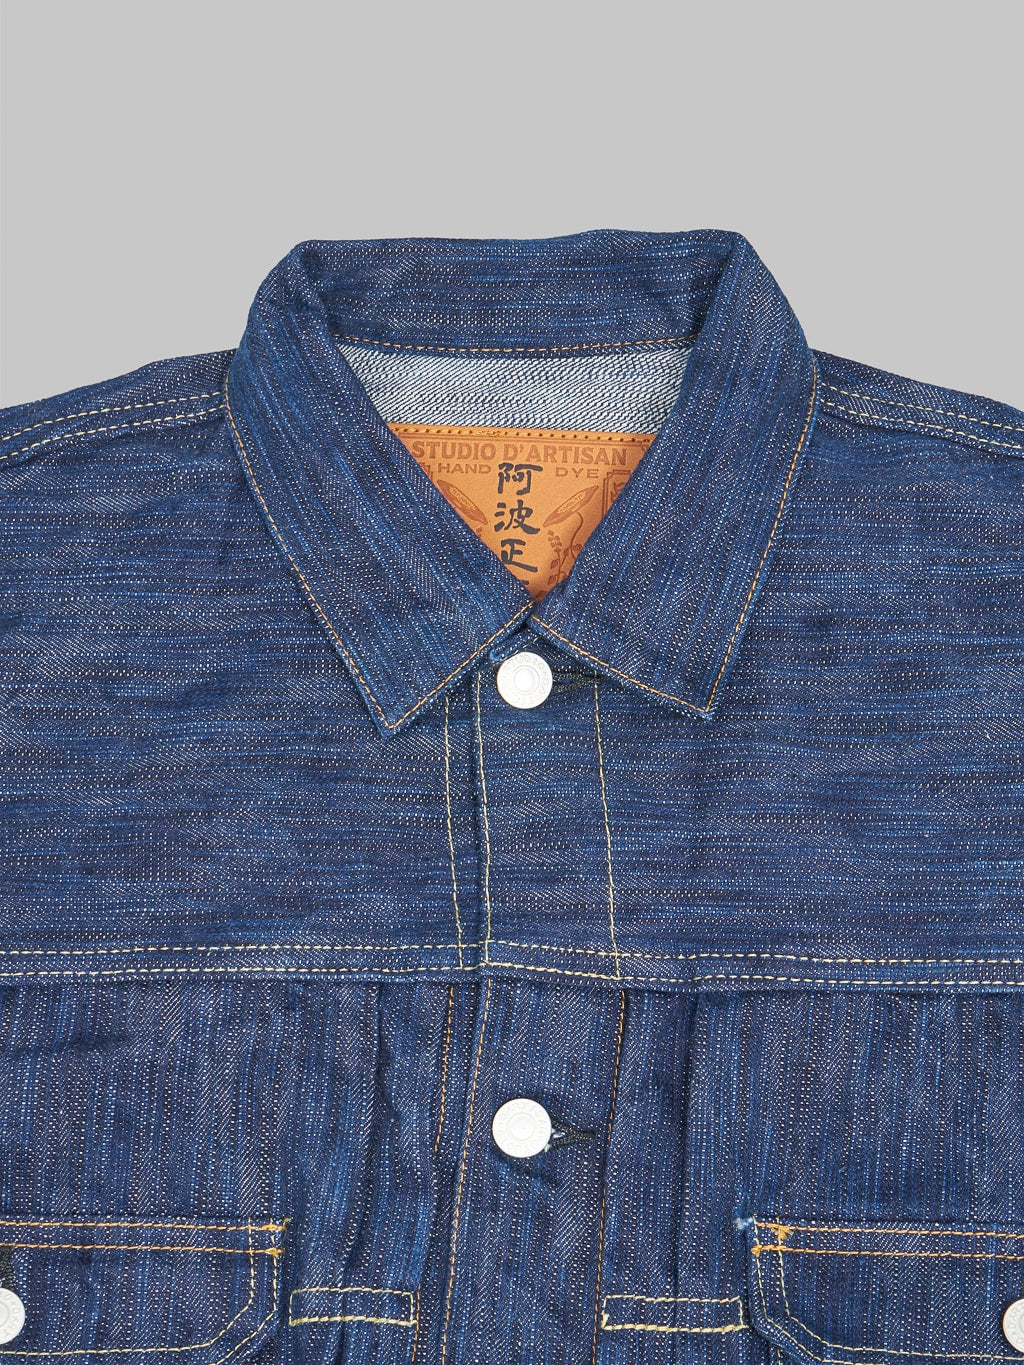 Studio Dartisan Tokushima Awa Shoai Type II indigo jacket collar detail